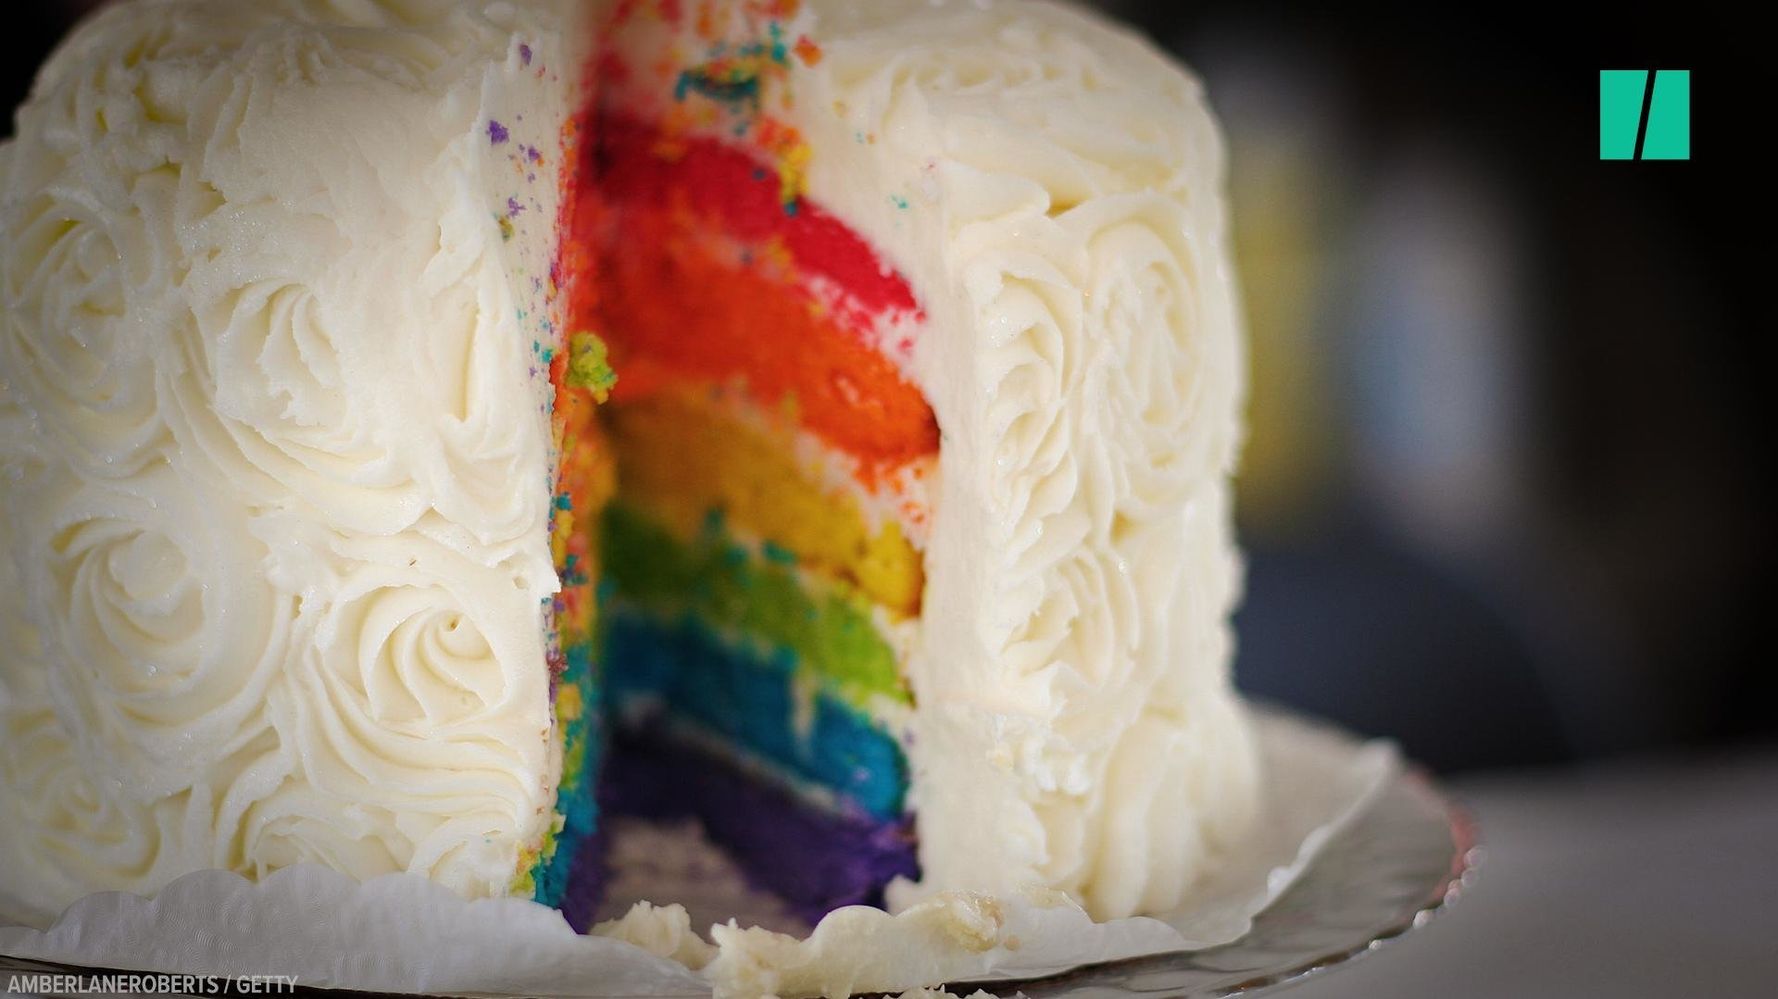 Doj Supports Baker Who Wouldn’t Make Same Sex Wedding Cake Huffpost